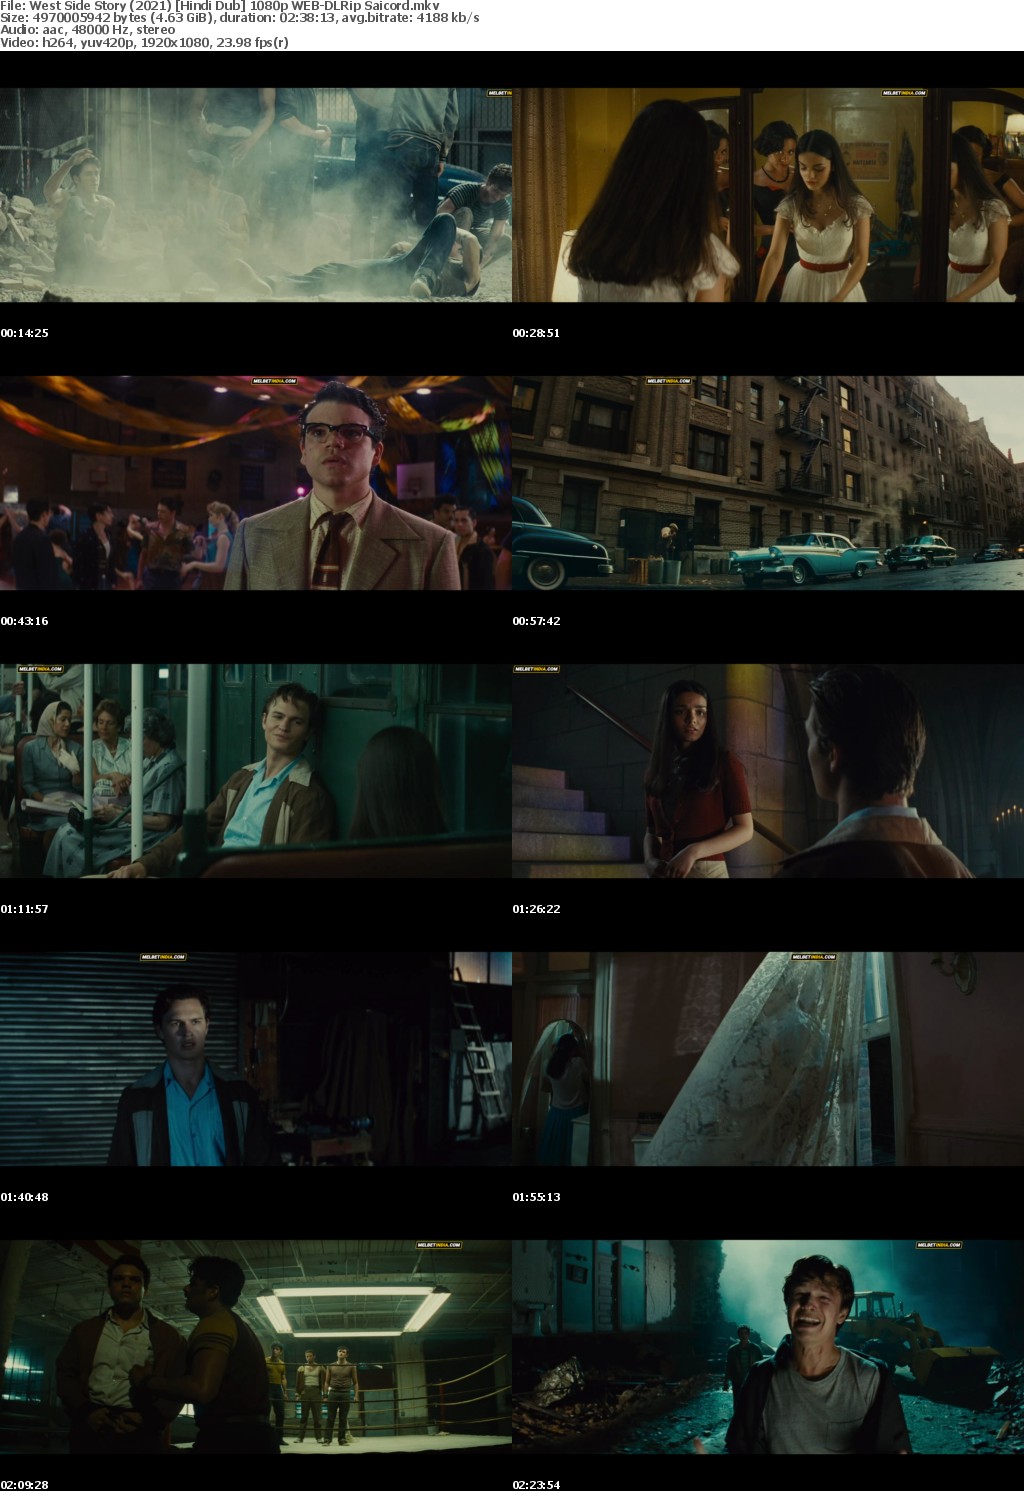 West Side Story (2021) Hindi Dub 1080p WEB-DLRip Saicord